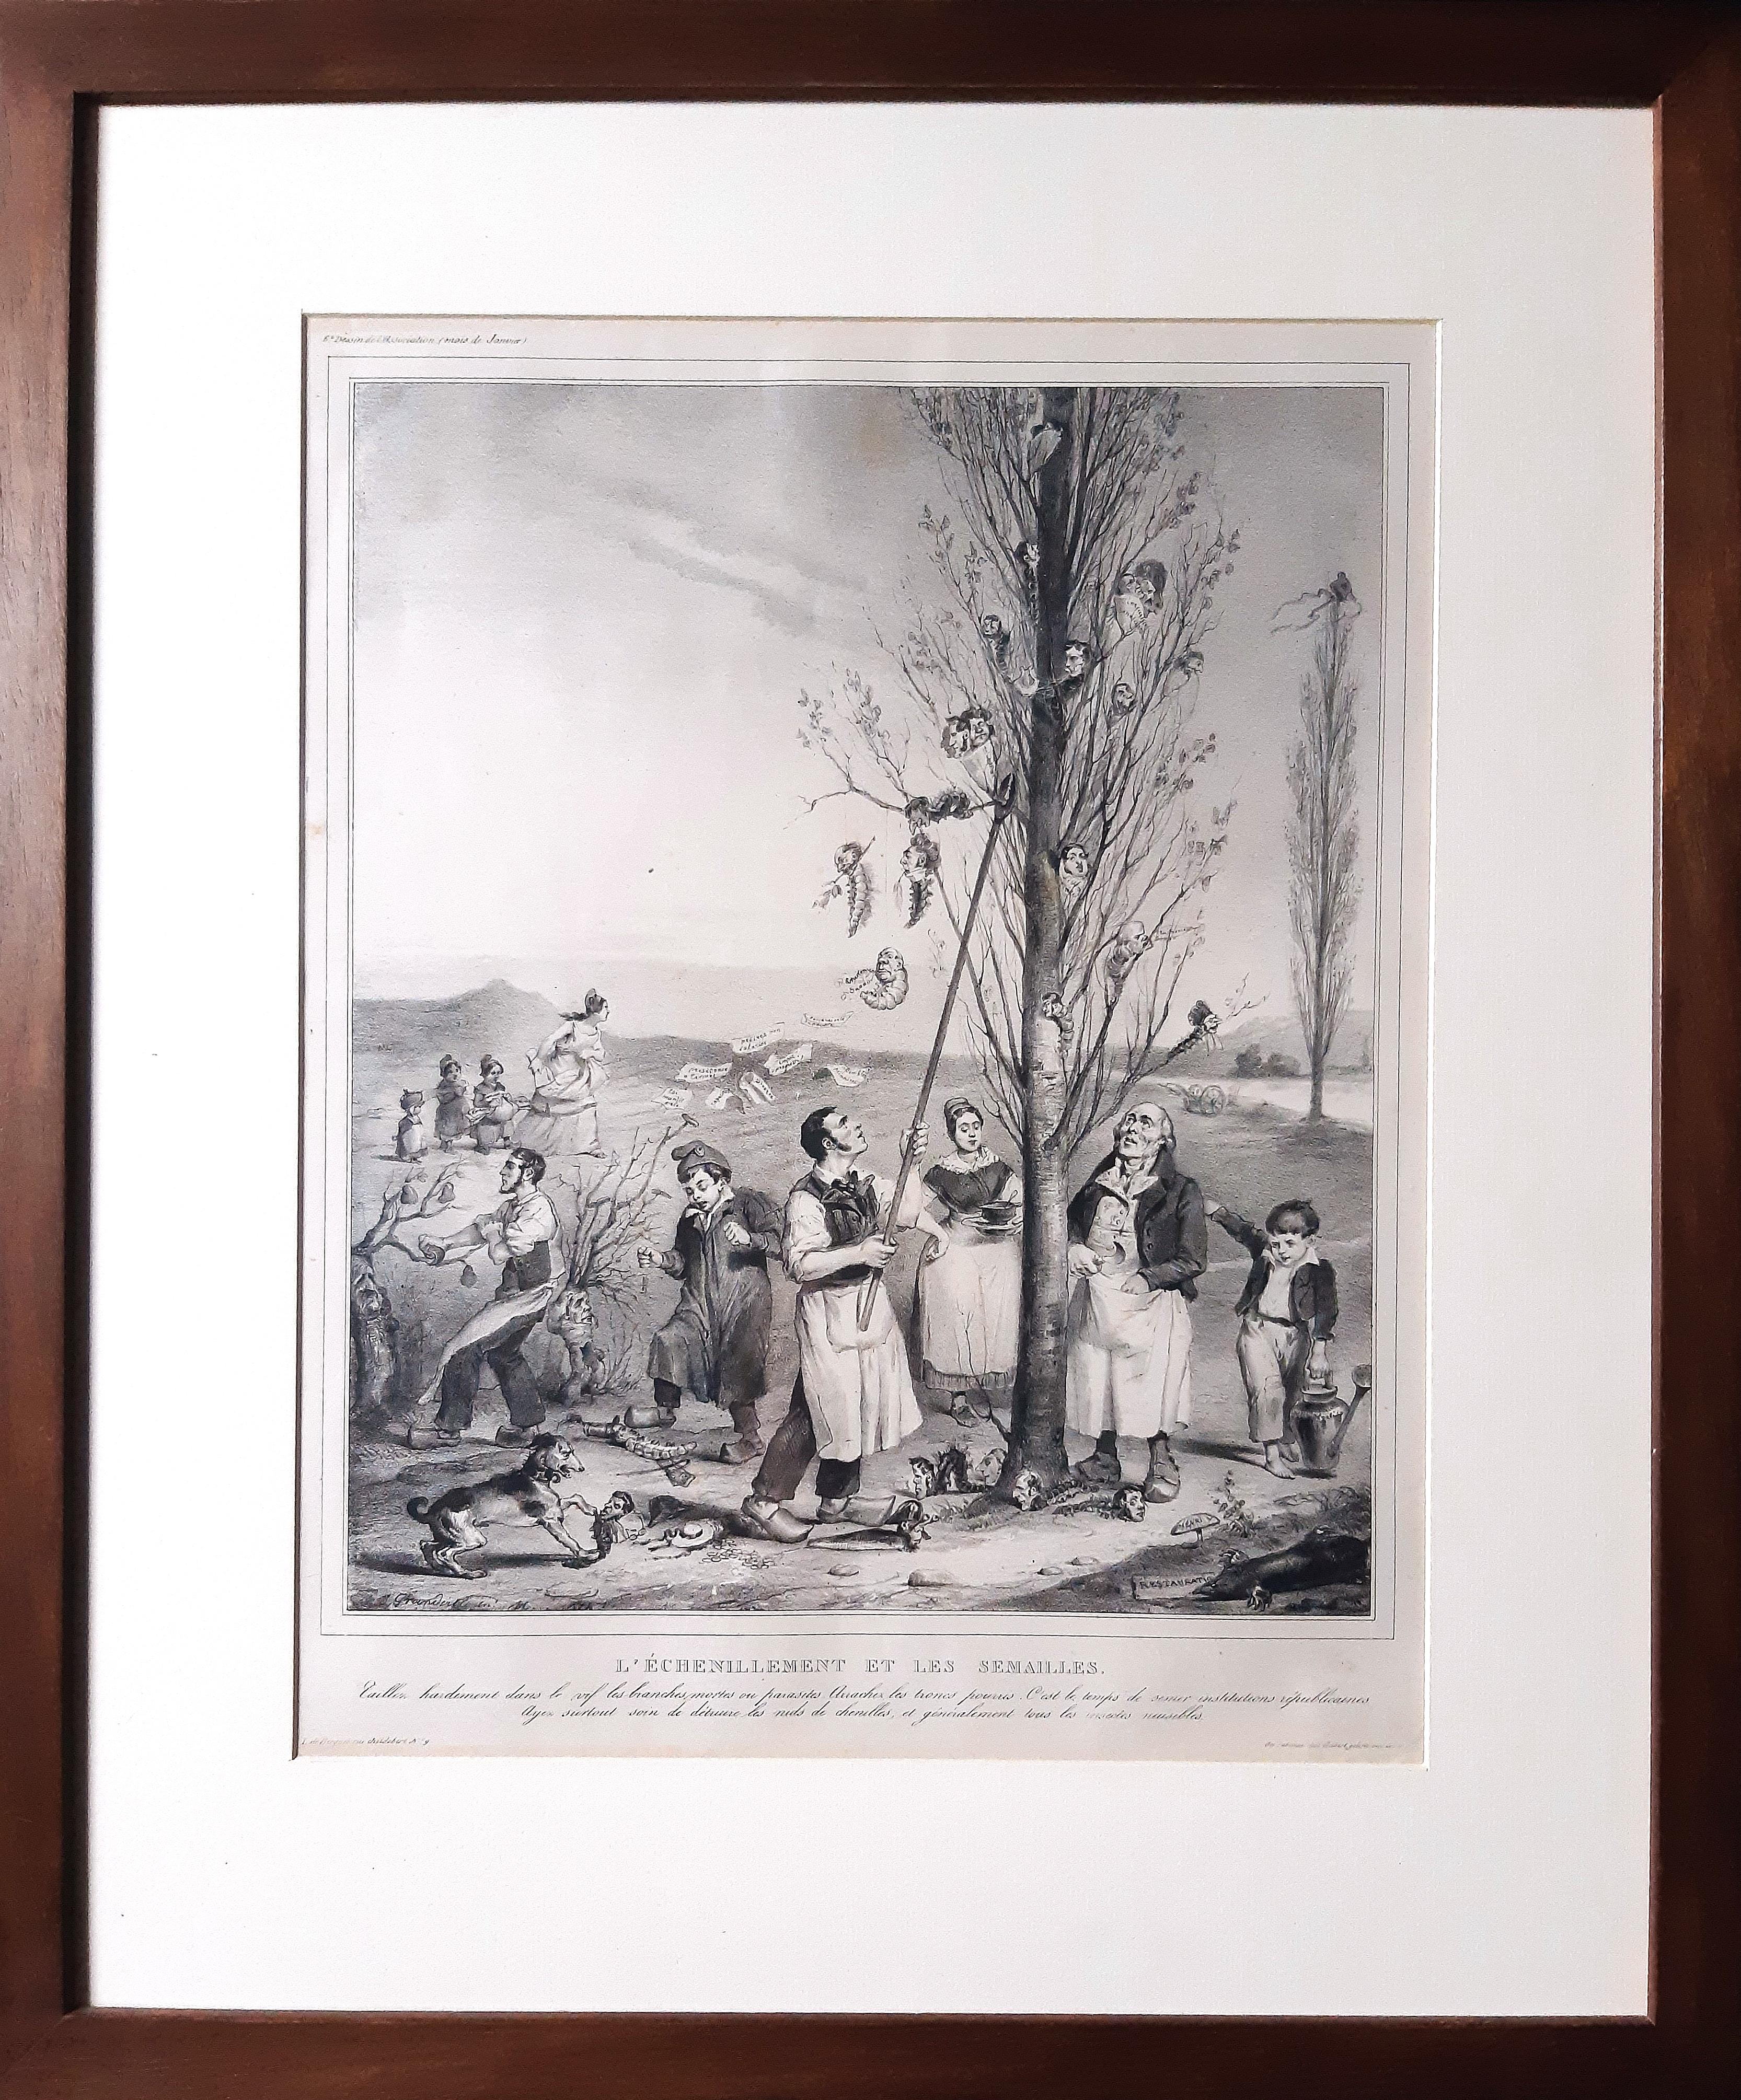 L’échénillement et les Sémaille  - Lithograph by J.J. Grandville - 1833 - Print by J. J. Grandville